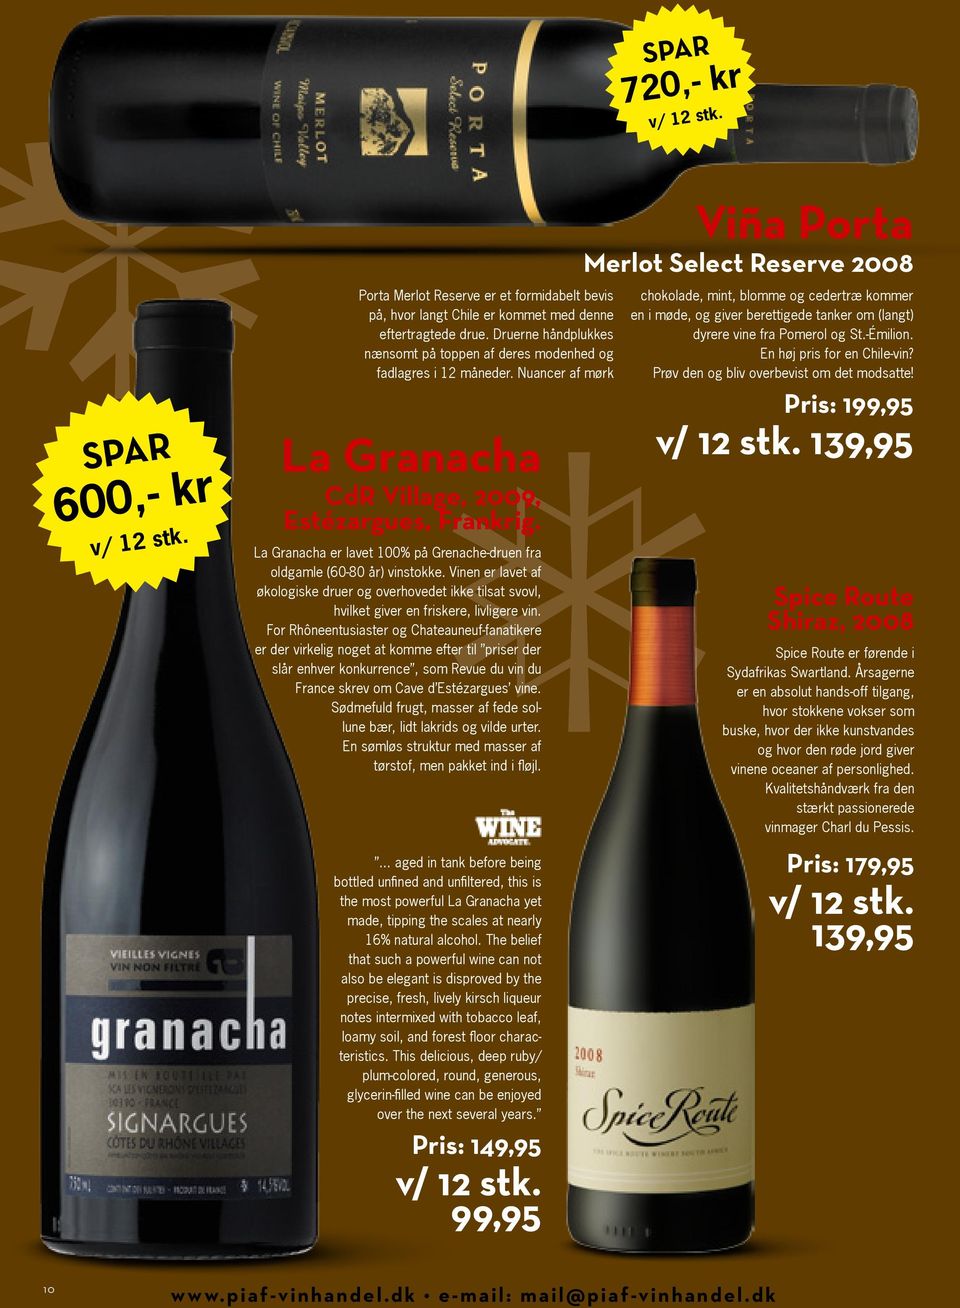 La Granacha er lavet 100% på Grenache-druen fra oldgamle (60-80 år) vinstokke. Vinen er lavet af økologiske druer og overhovedet ikke tilsat svovl, hvilket giver en friskere, livligere vin.